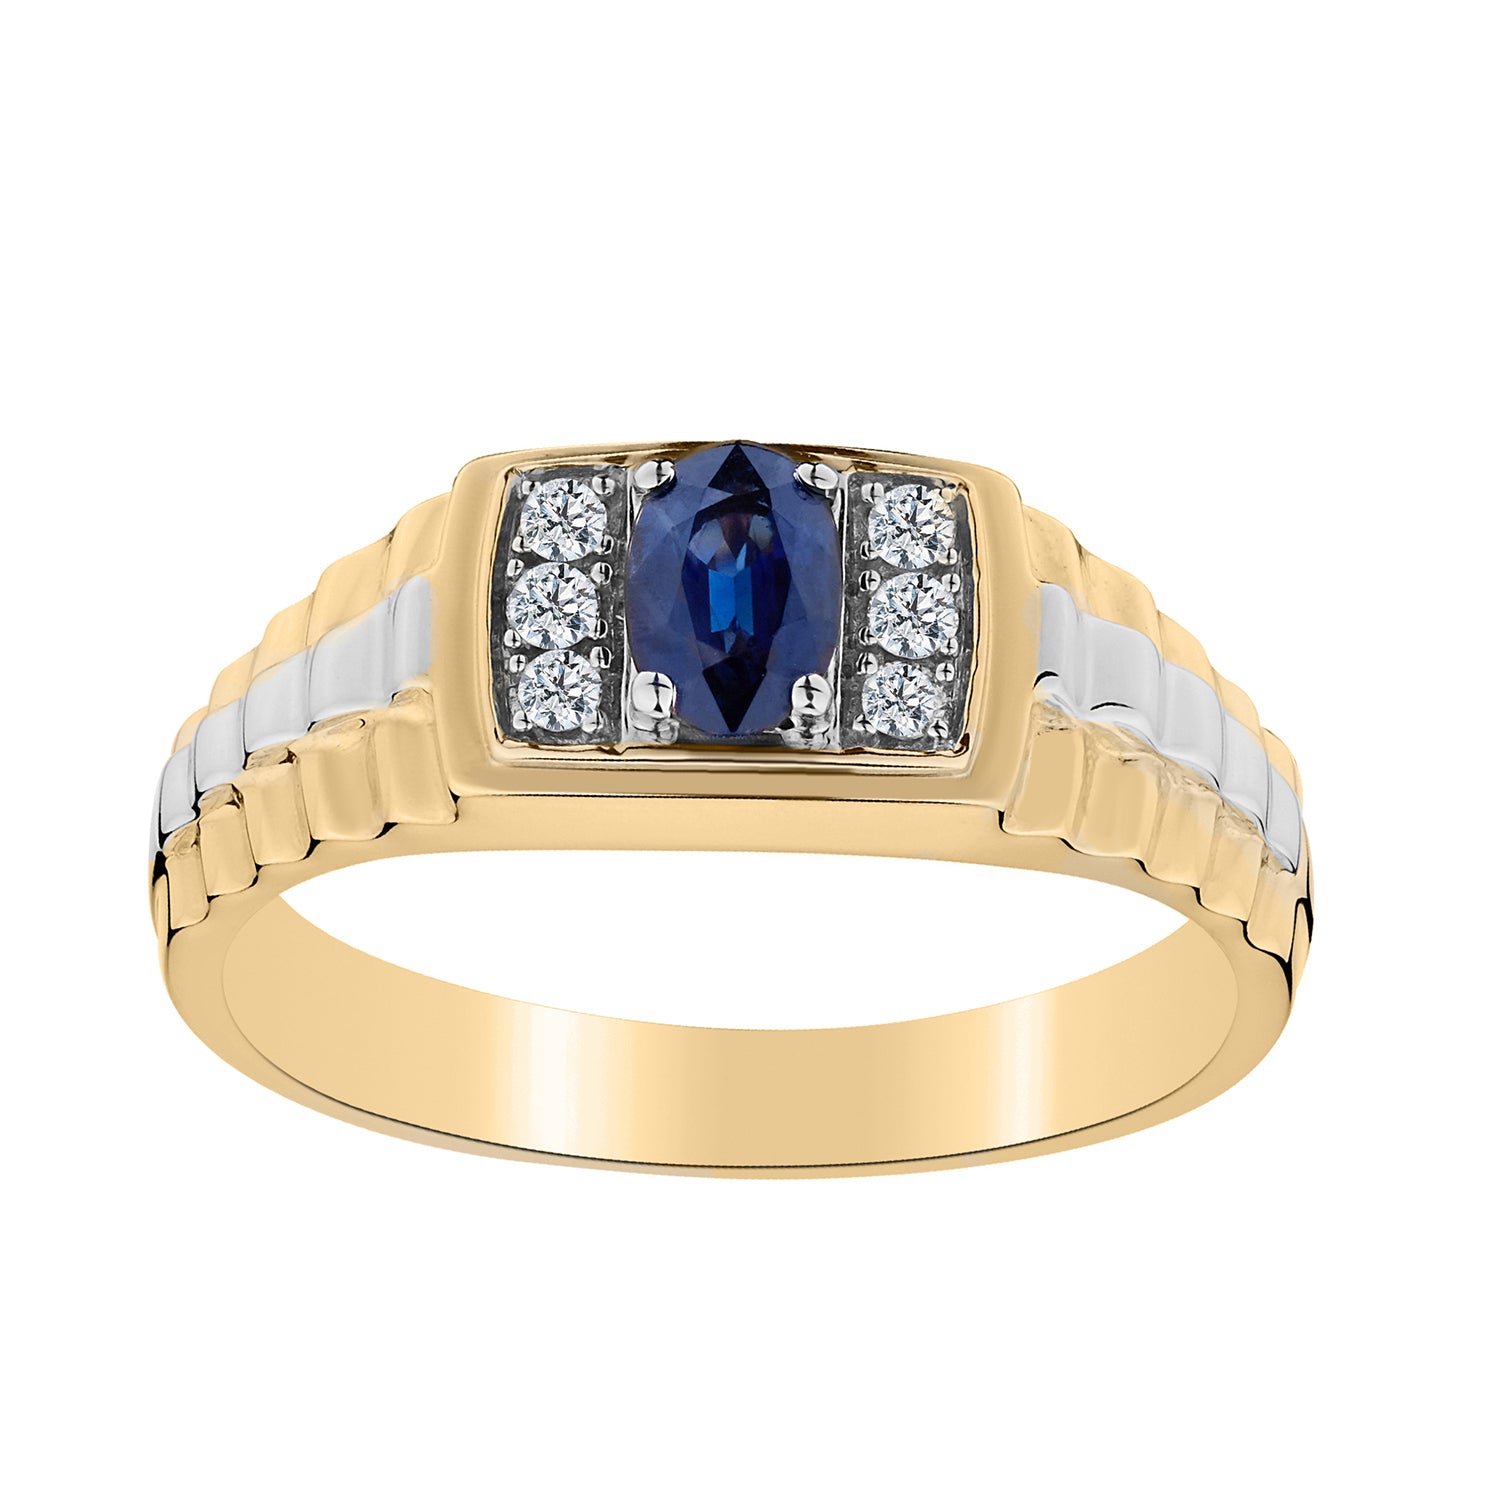 Square Semi Precious Gemstone Ring – Diamonds On The Key